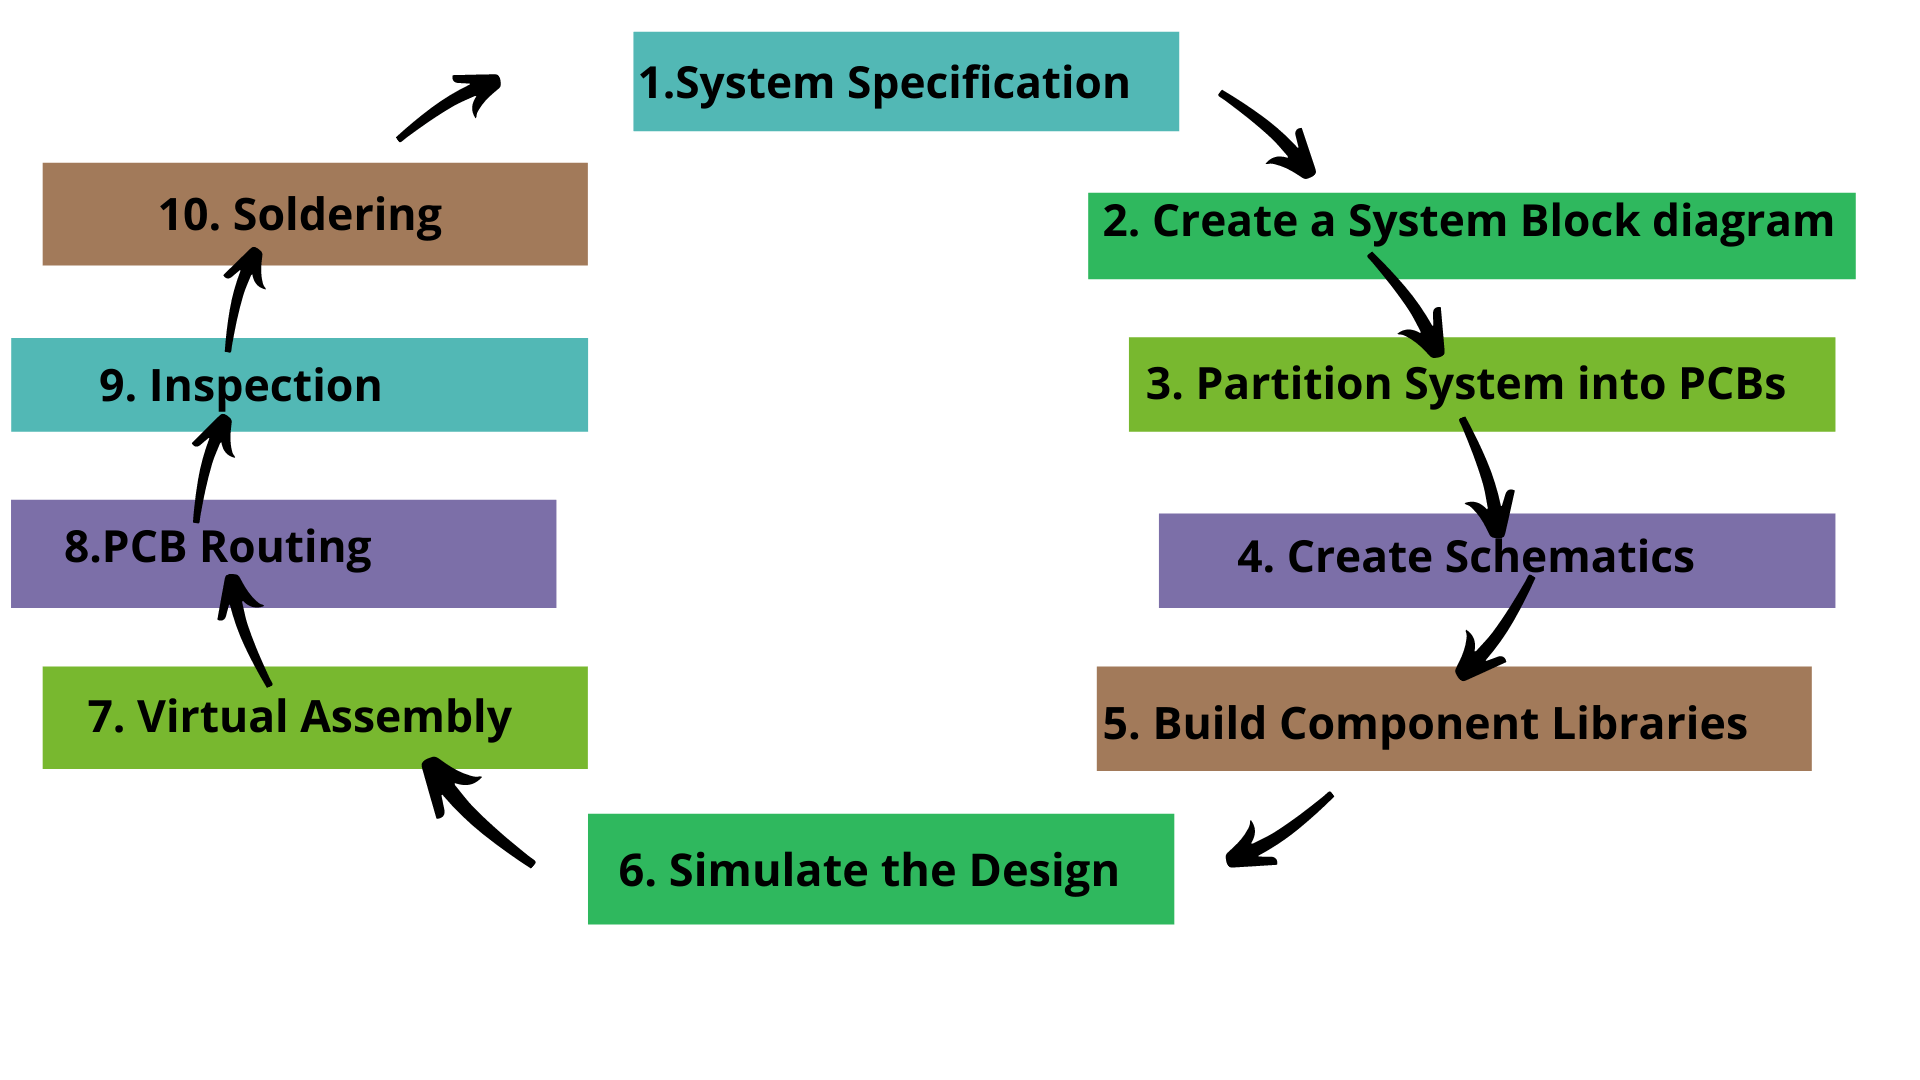 PCB design process